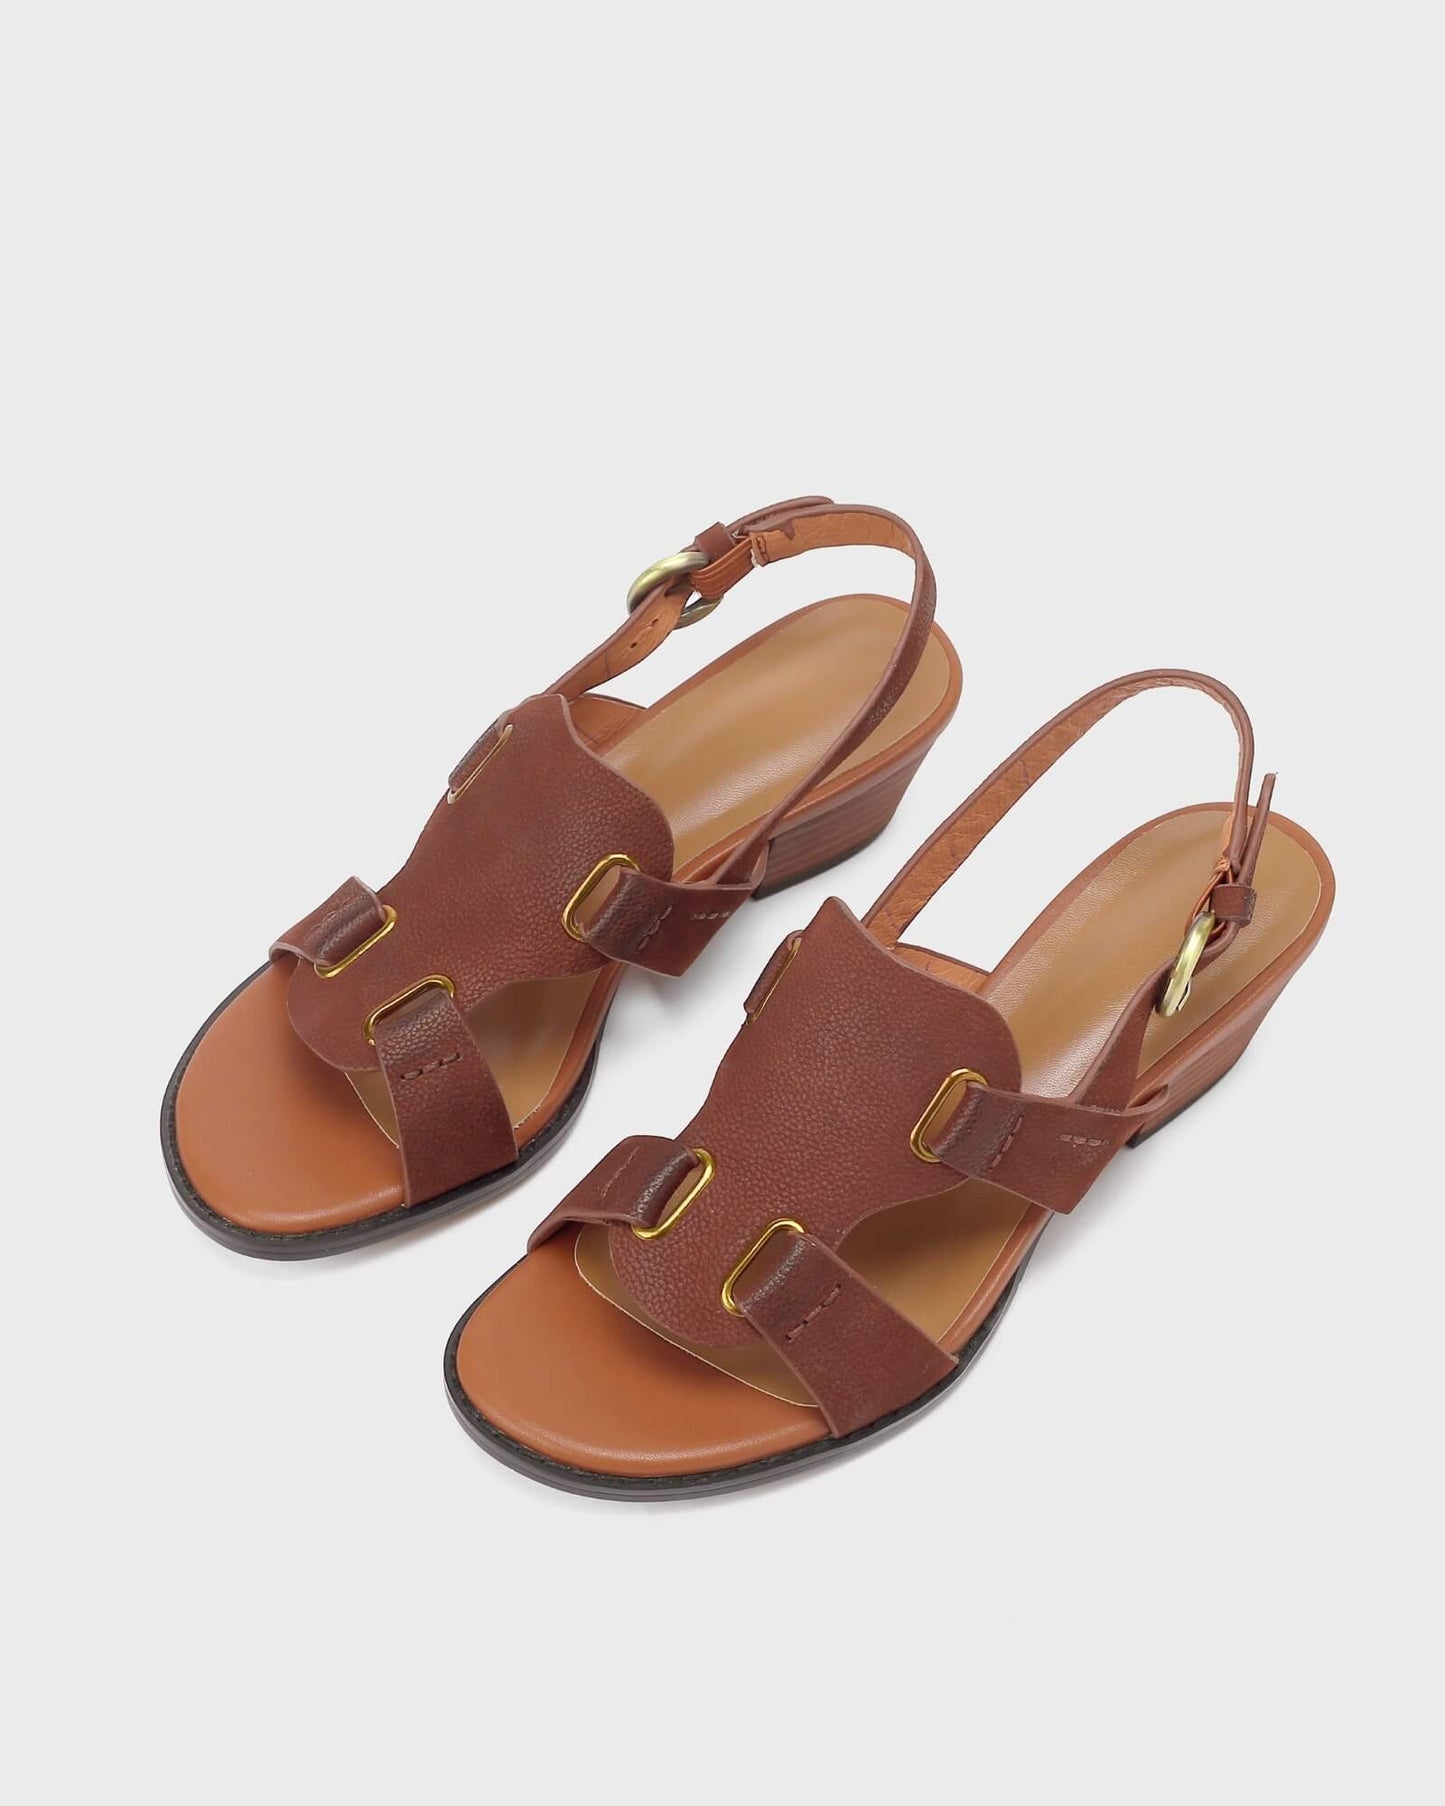 Sivio - Gladiator Sandals